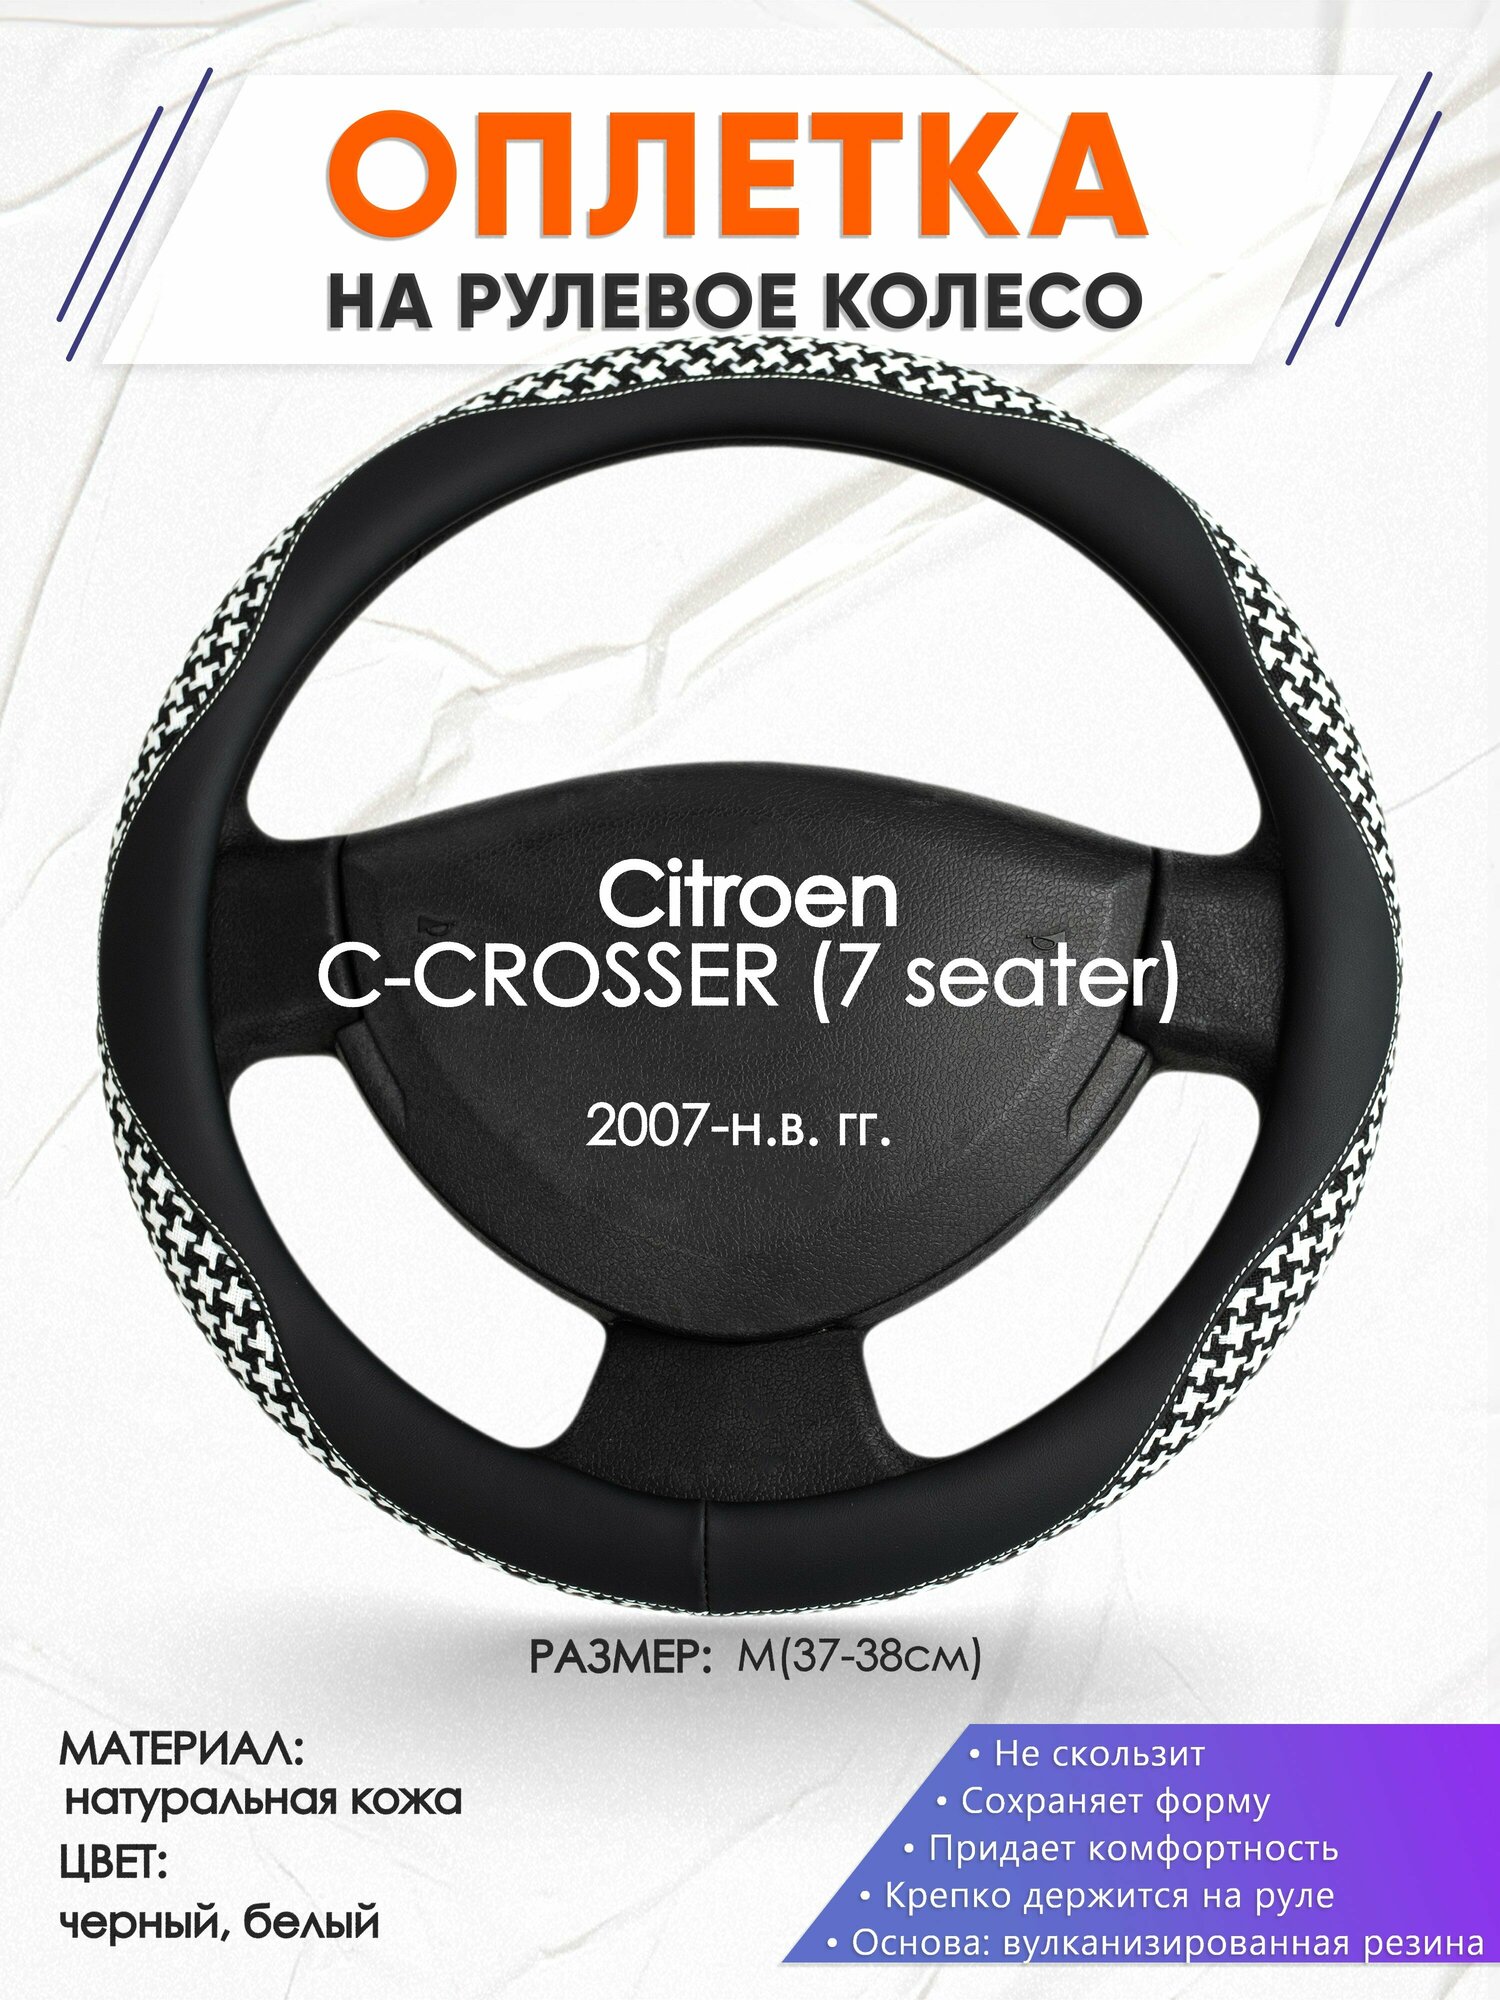 Оплетка наруль для Citroen C-CROSSER (7 seater)(Ситроен Ц-кроссер) 2007-н. в. годов выпуска, размер M(37-38см), Натуральная кожа 21